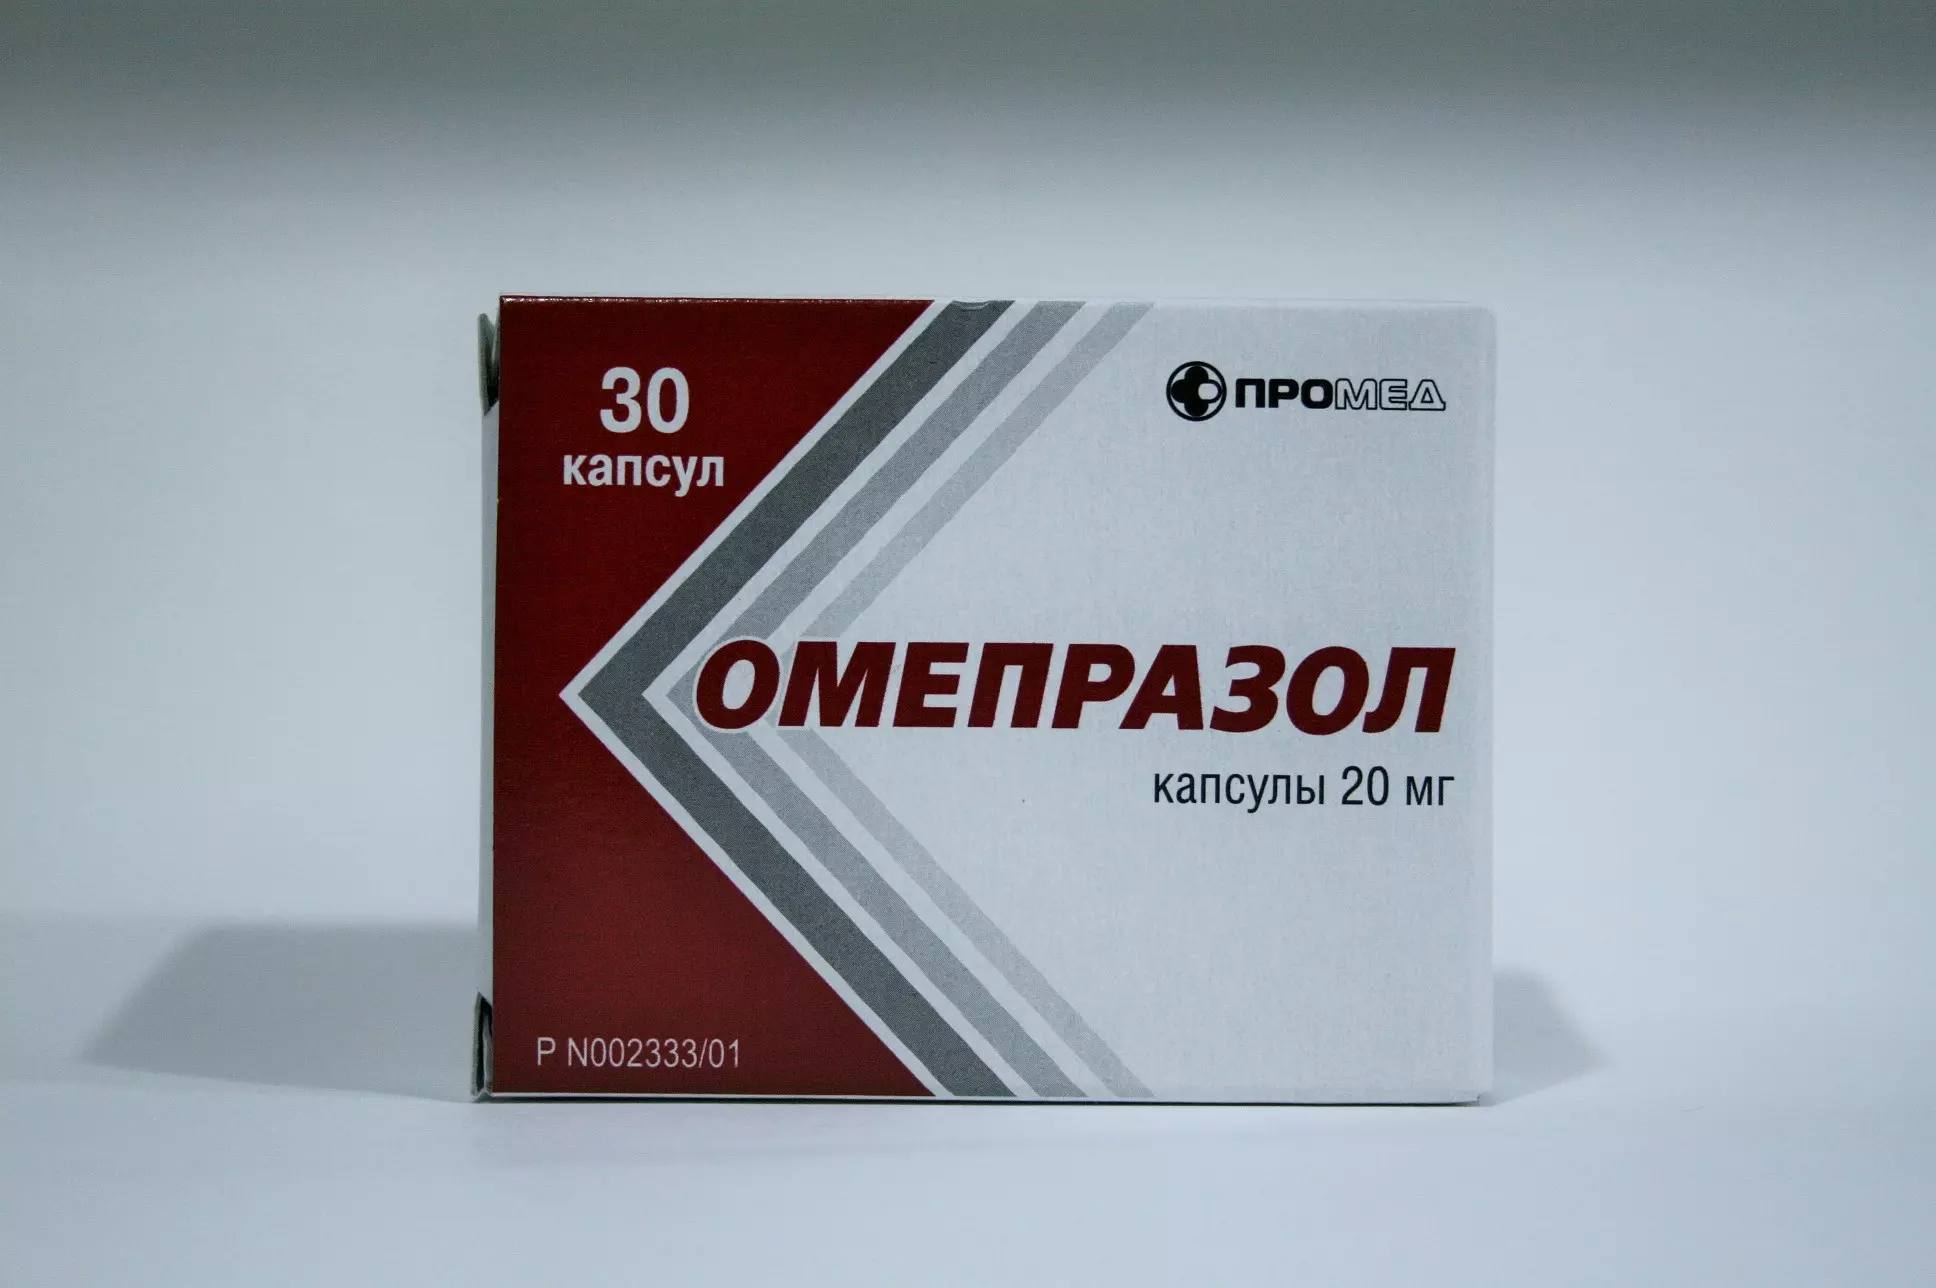 Омепразол относится к группе. Омепразол капсулы 20 мг Промед. Омепразол капс 20мг 30 производство медикаментов. Омепразол 50 мг.